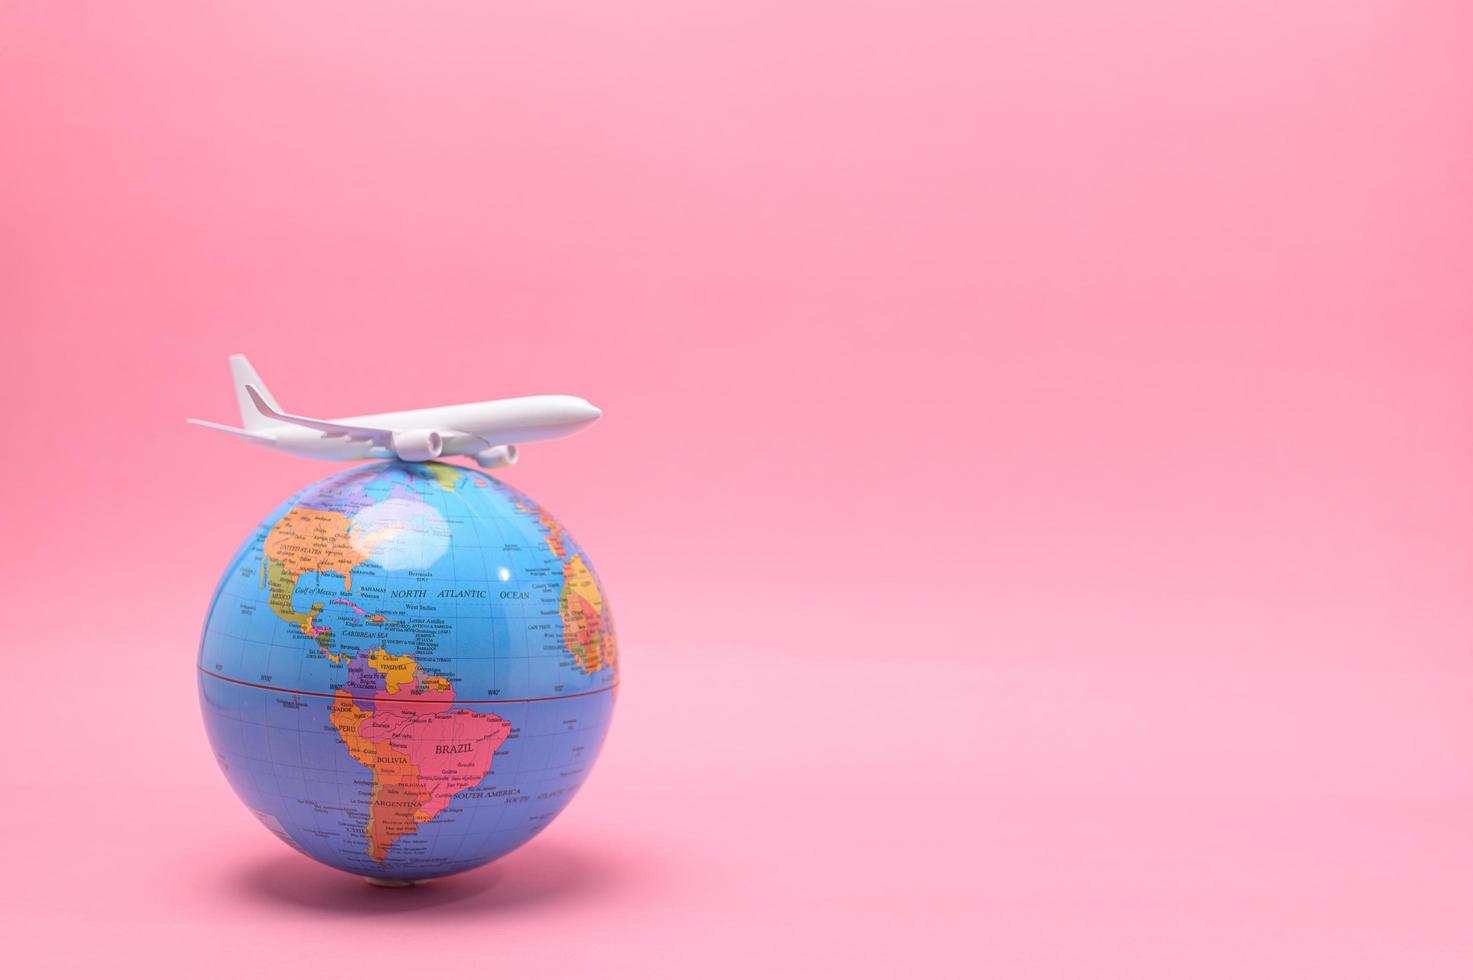 transporte e turismo de avião ao redor do mundo foto